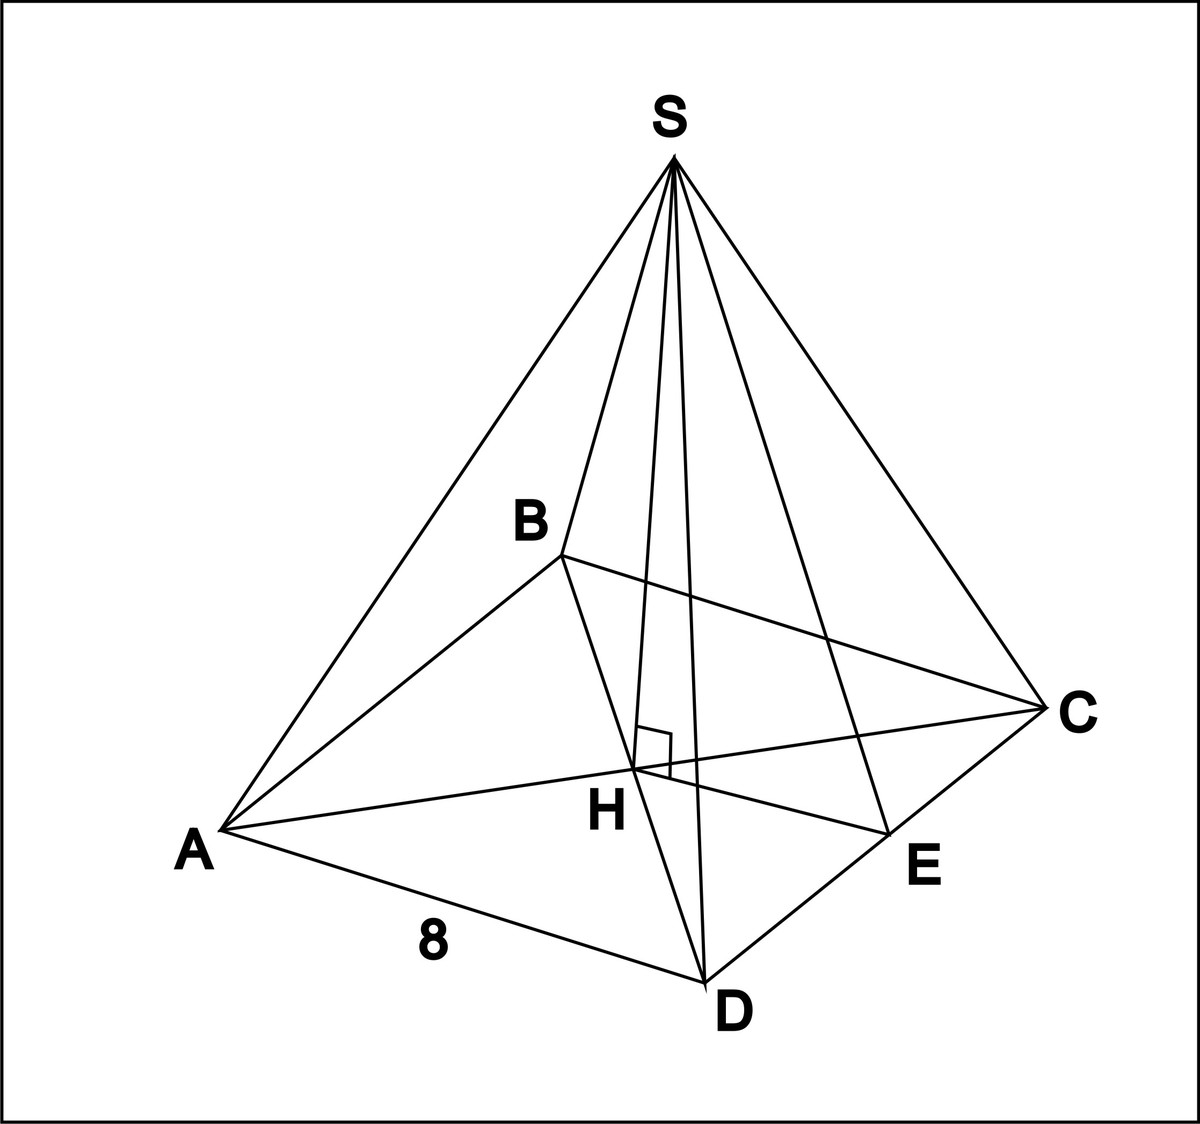 Четырехугольной пирамиды